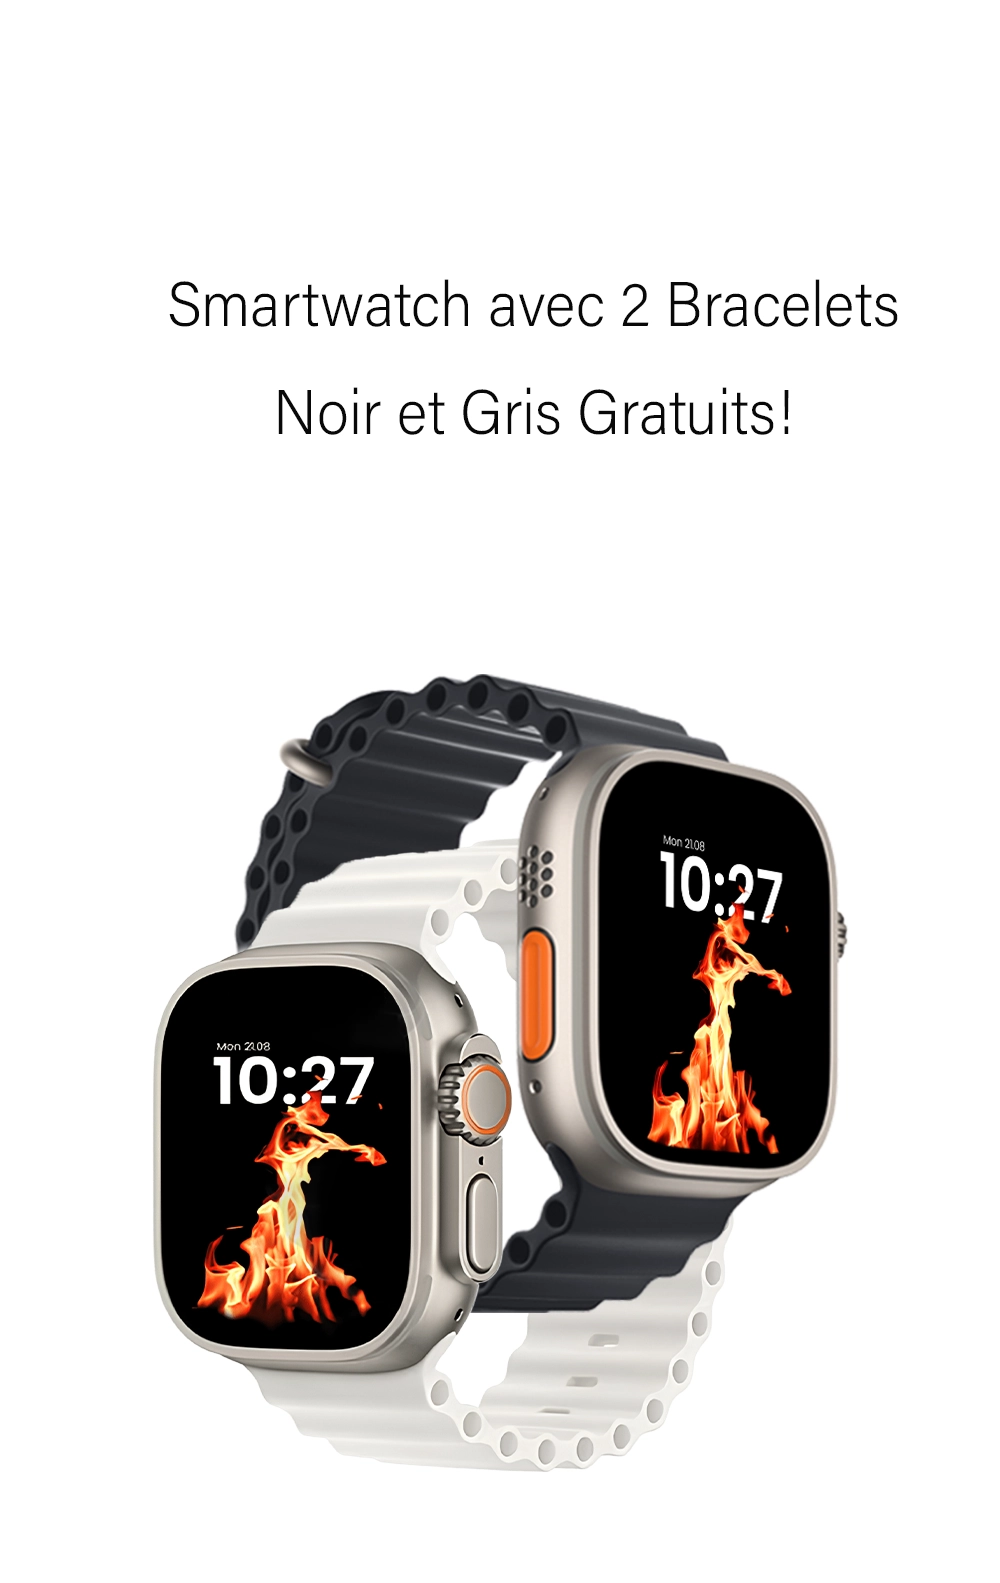 Smartwatch avec 2 Bracelets Noir et Gris Gratuits!